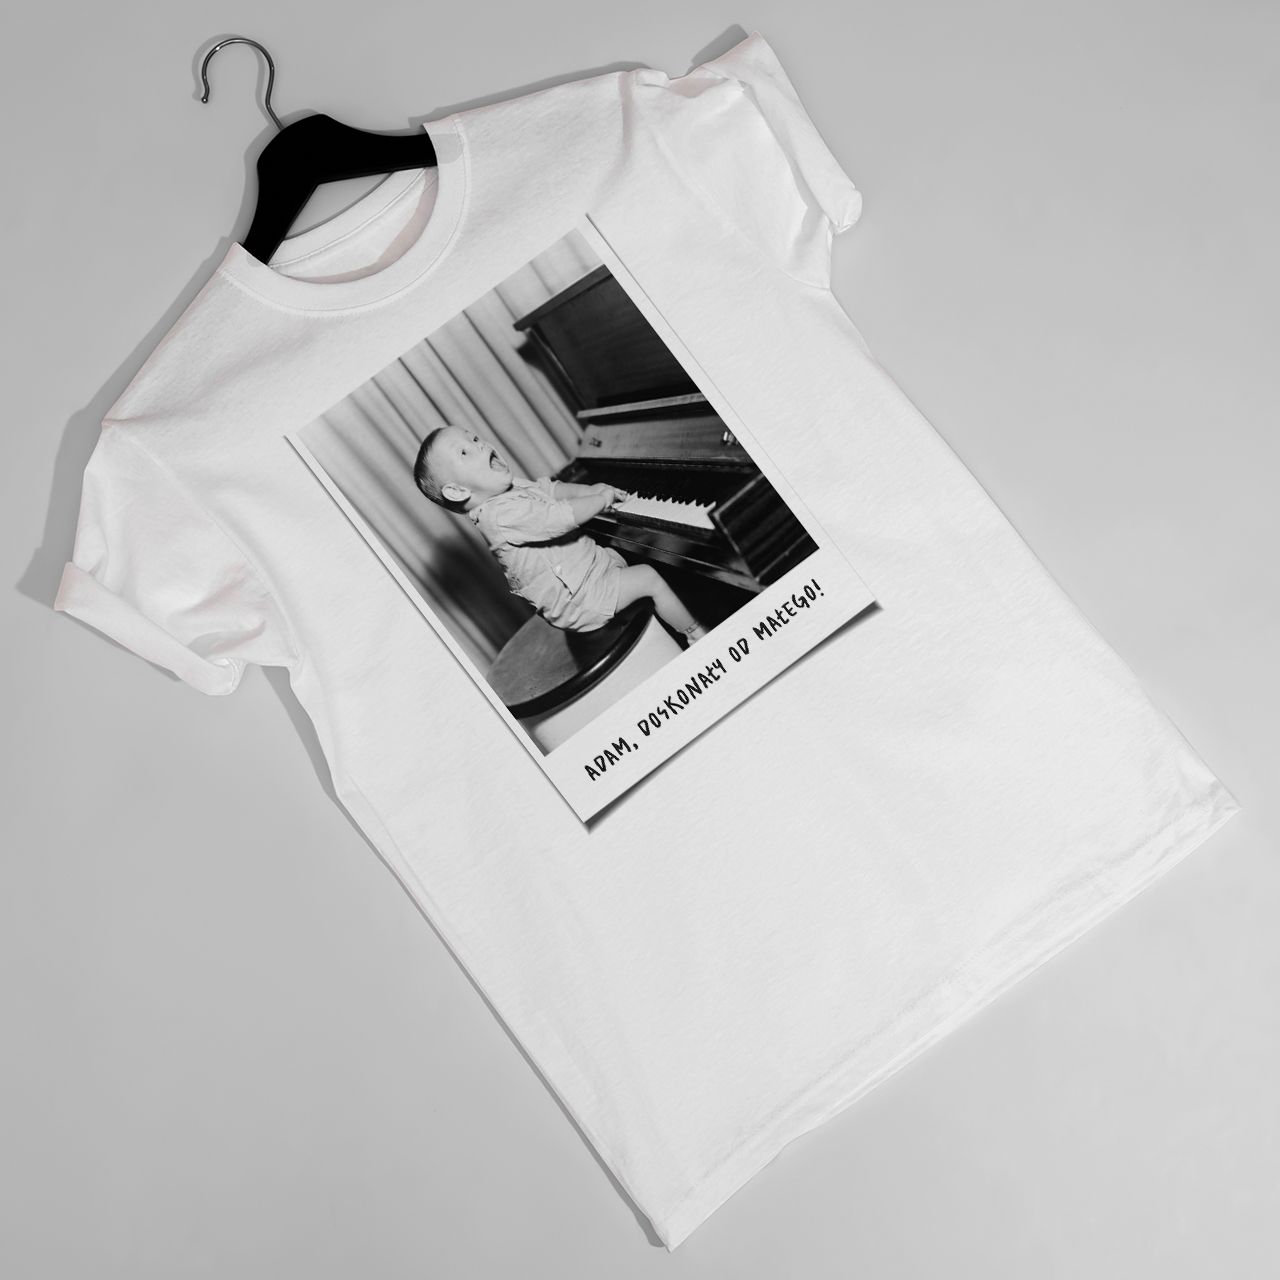 Męska koszulka ze zdjęciem DUŻA FOTKA t-shirt urodzinowy - L